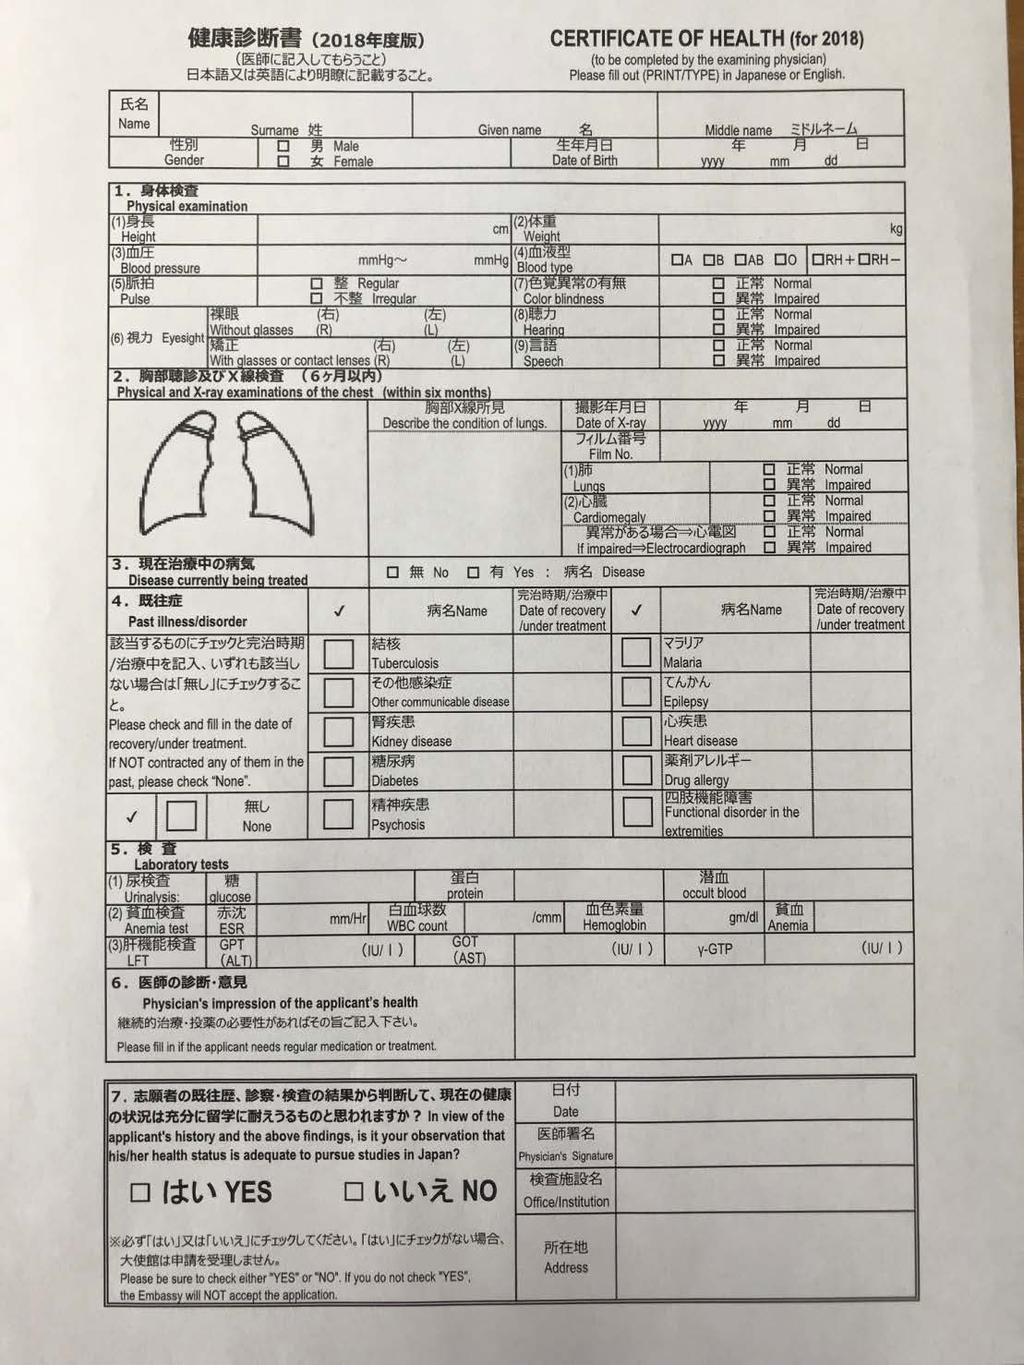 7- Sağlık Formu - 1 orijinal, 1 fotokopi olabilir. (2 Set) Sağlık formu, İngilizce ya da Japonca doldurulması ve üzerinde imza ve kaşe bulunması koşuluyla her türlü sağlık kurumunda doldurulabilir.